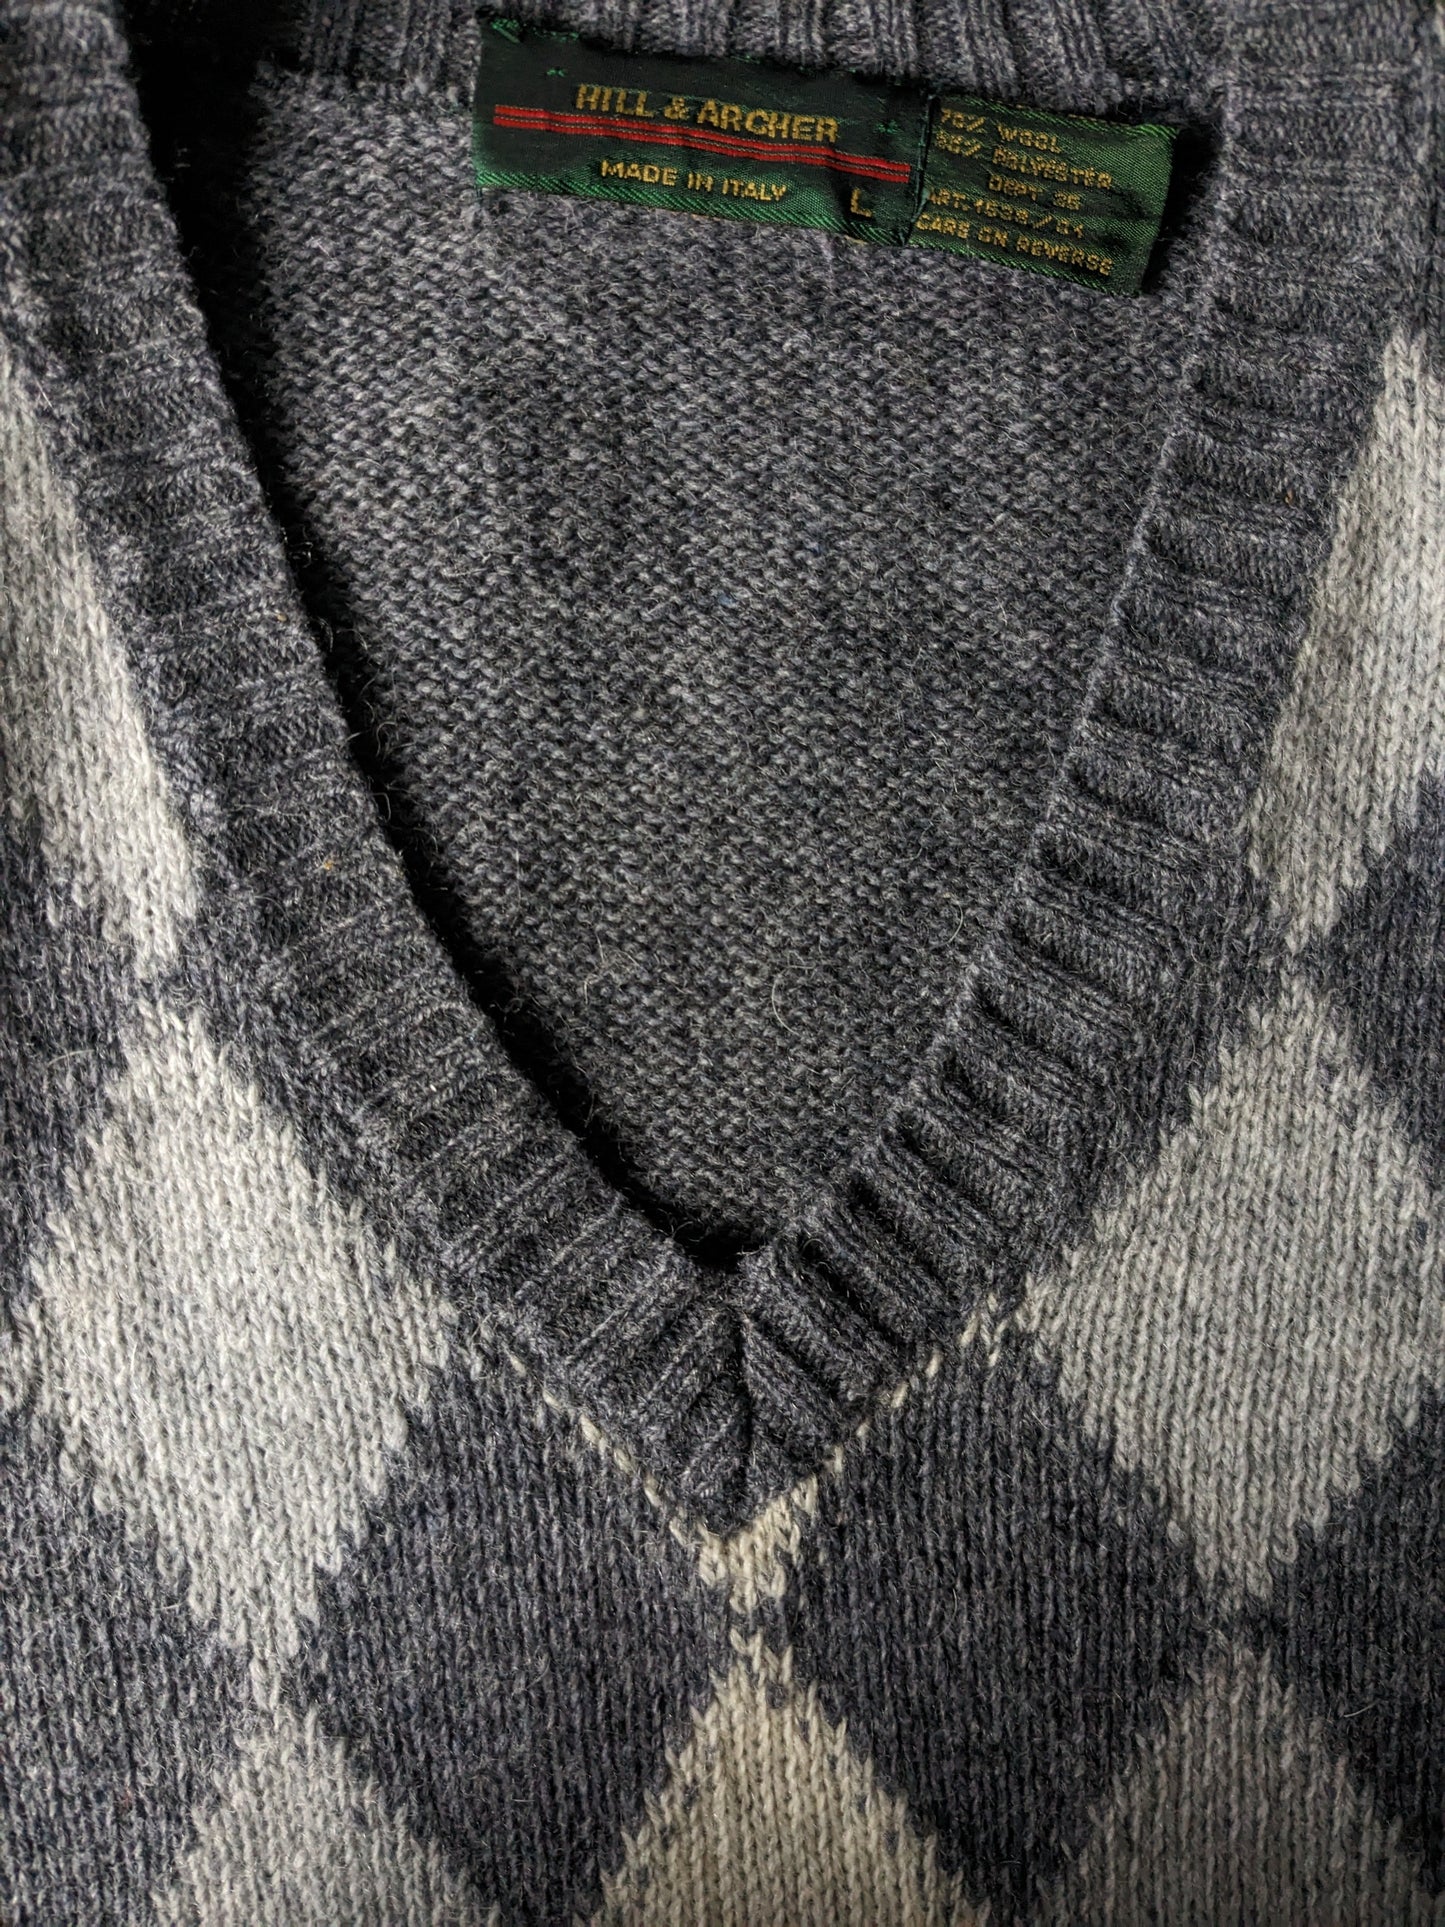 Vintage Hill & Archer Wools Spencer. Motivo grigio beige argyle. Dimensione L. 70% lana.